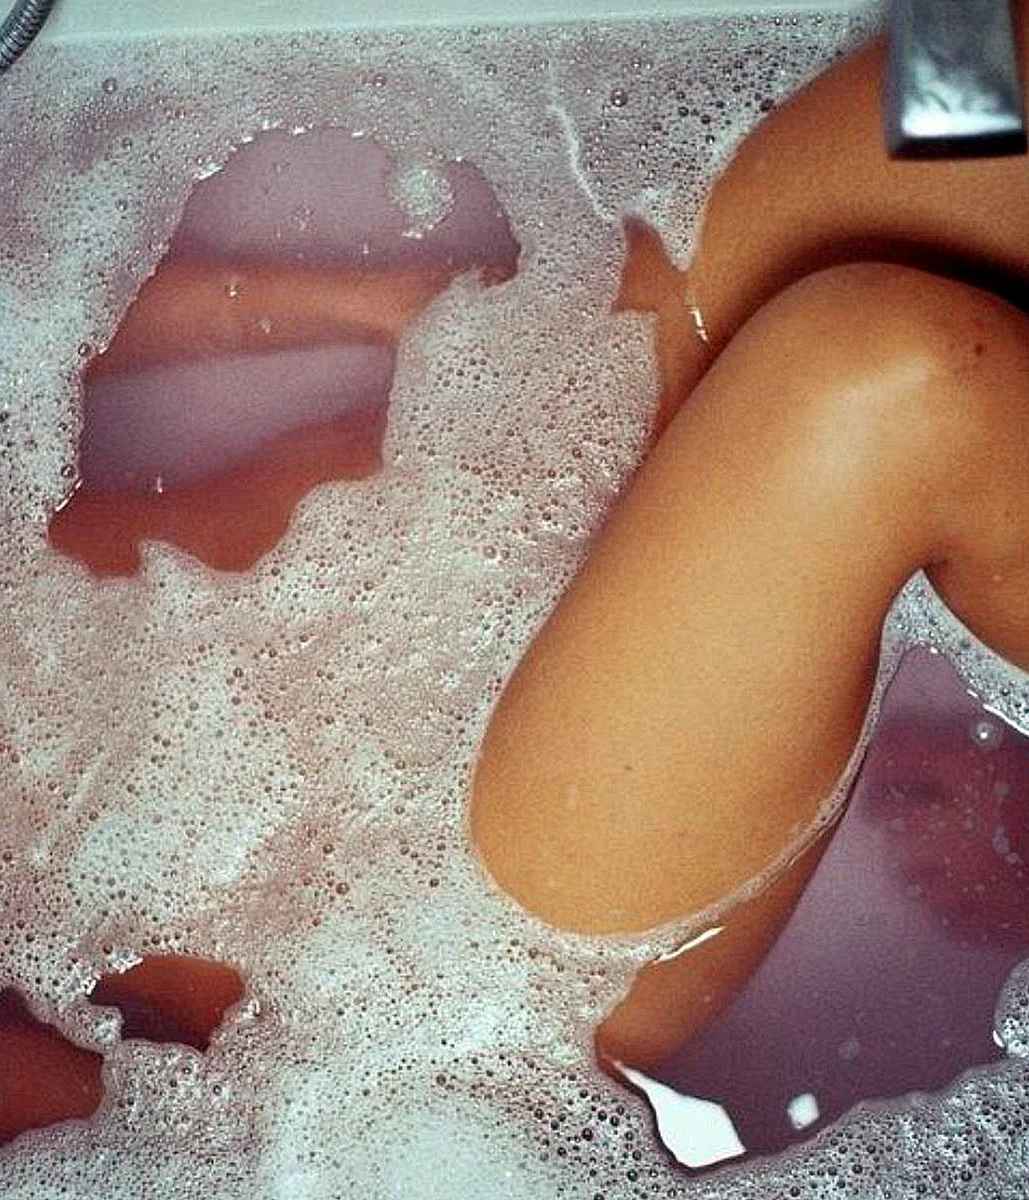 Фото девушки в ванной с пеной